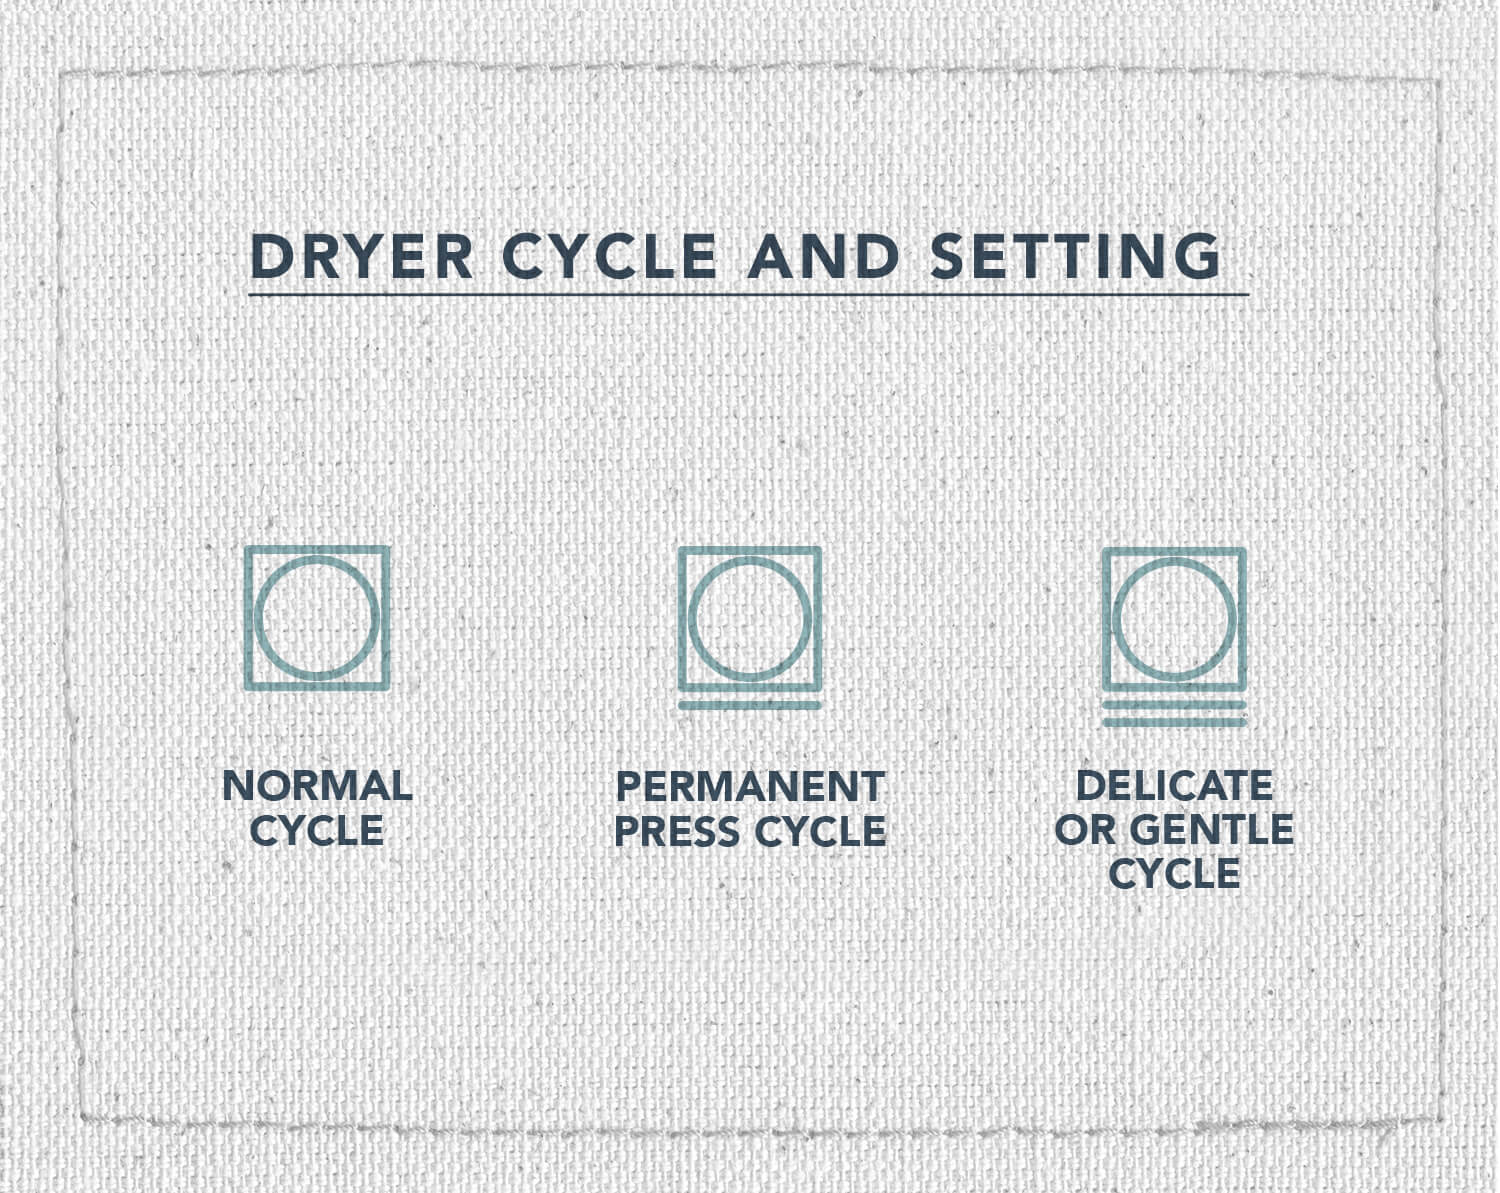 Une infographie de trois symboles d'entretien des tissus illustrant quels symboles signifient exécuter un cycle normal, un cycle de presse permanent ou un cycle délicat ou doux